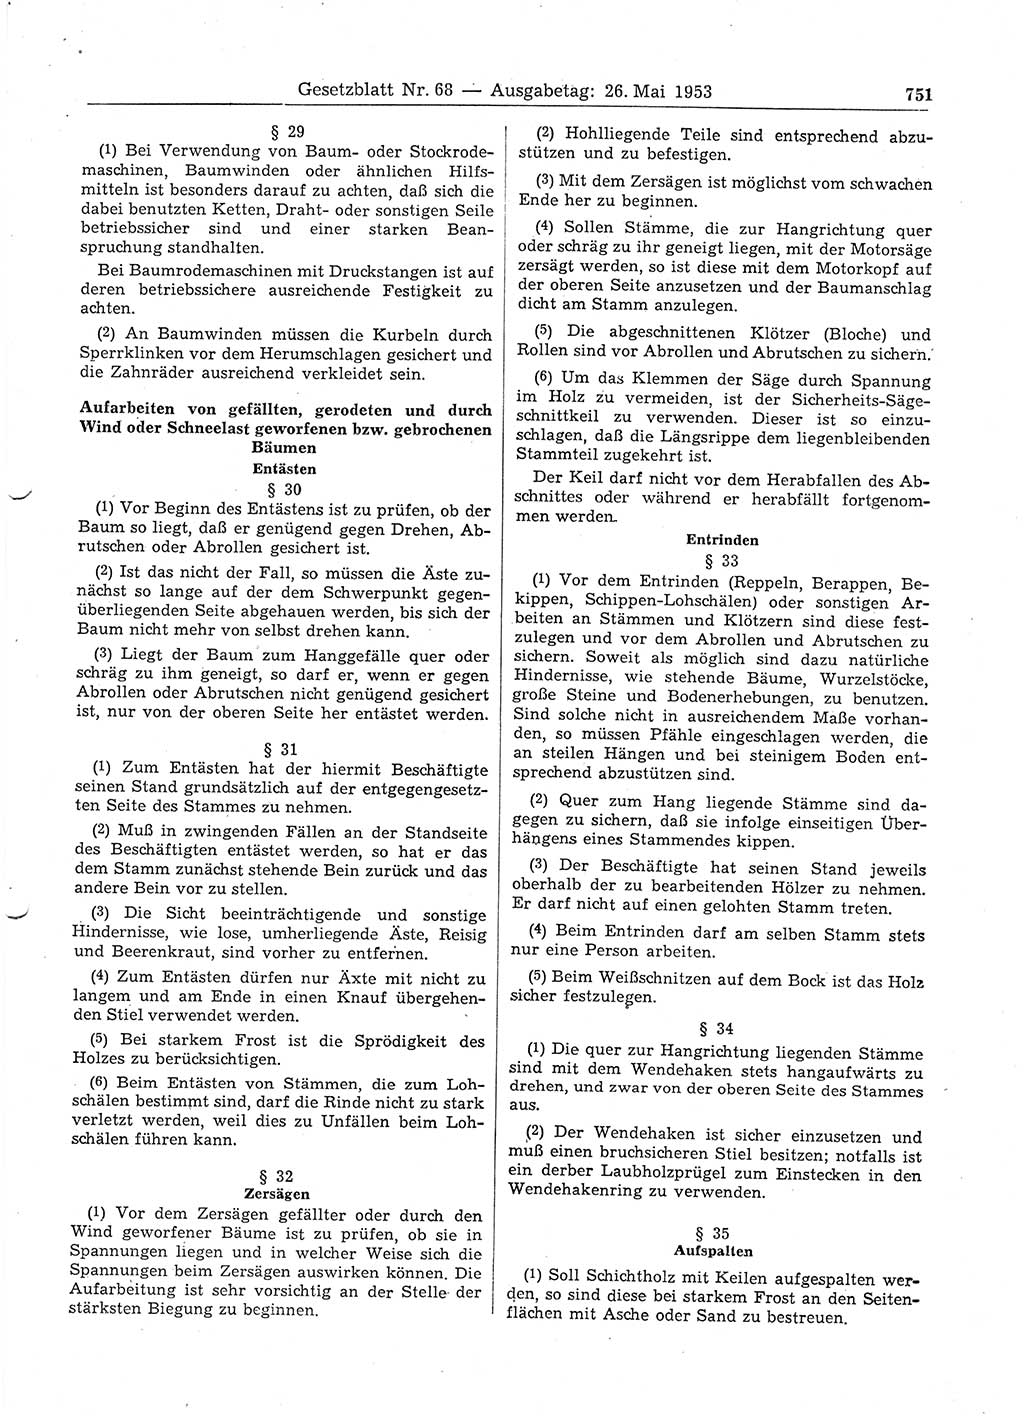 Gesetzblatt (GBl.) der Deutschen Demokratischen Republik (DDR) 1953, Seite 751 (GBl. DDR 1953, S. 751)